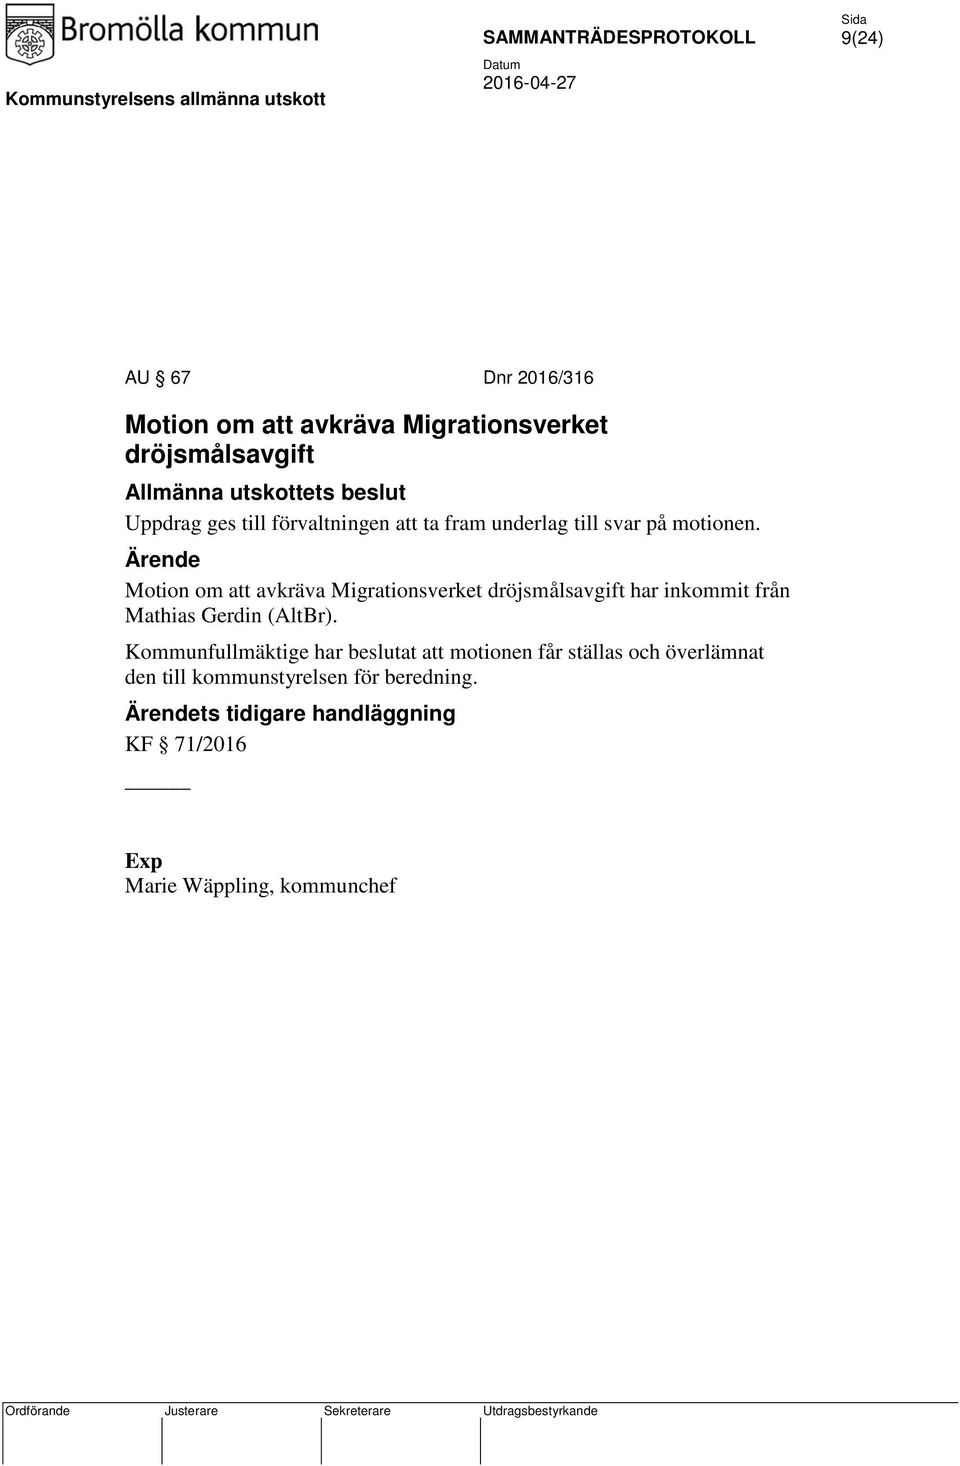 Motion om att avkräva Migrationsverket dröjsmålsavgift har inkommit från Mathias Gerdin (AltBr).